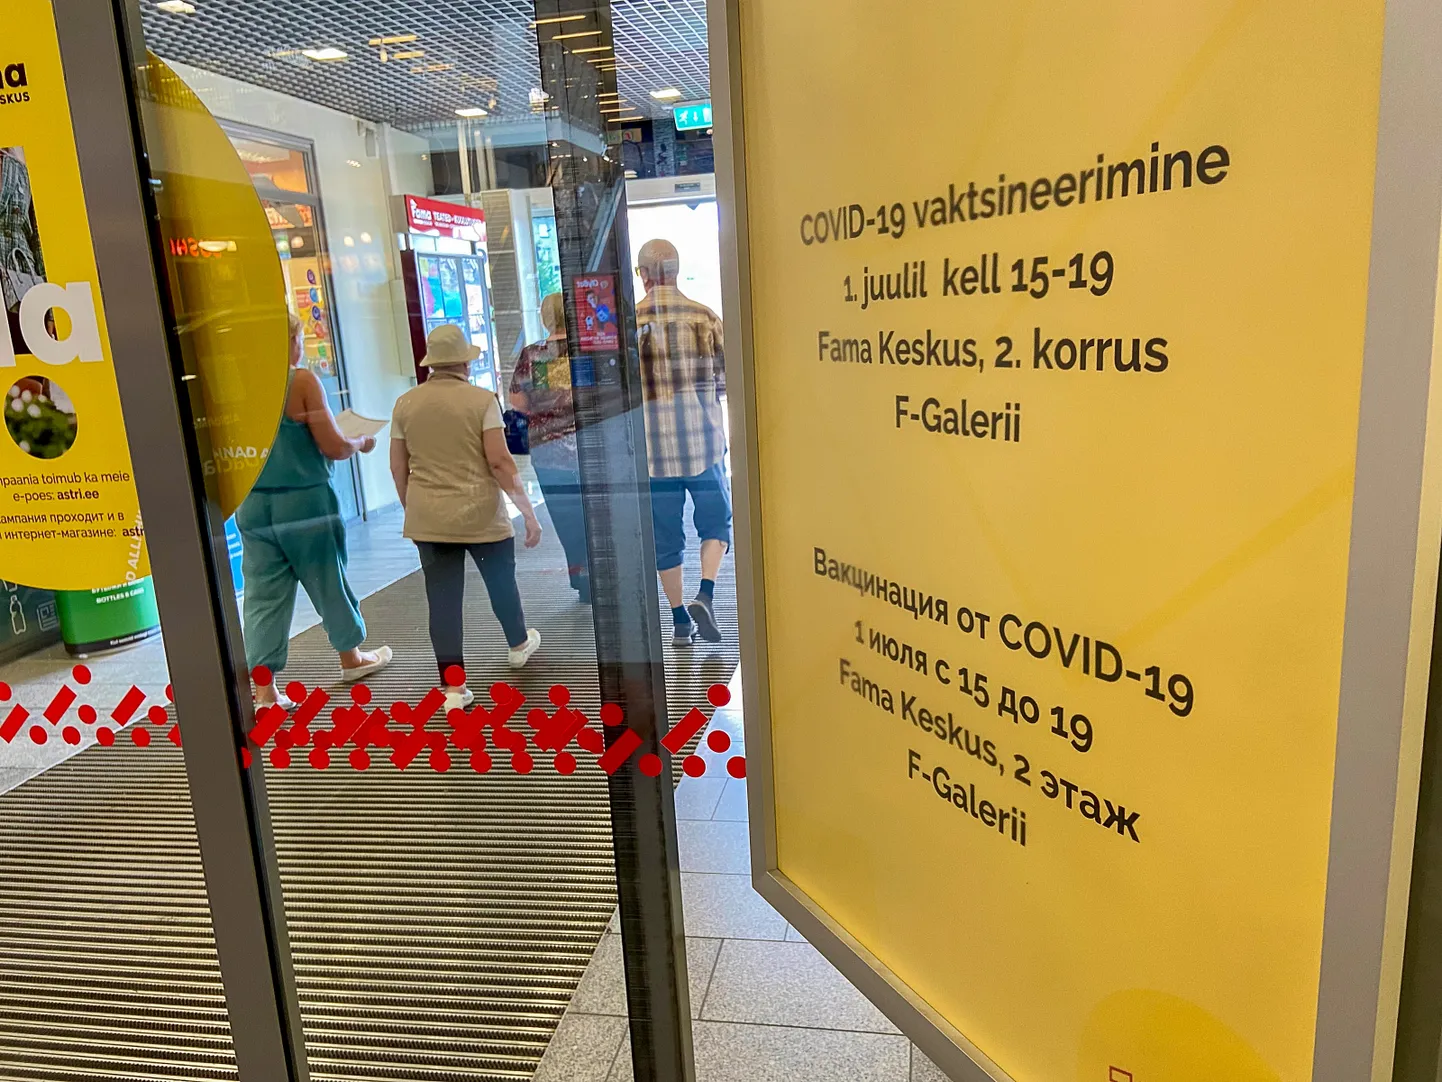 В нарвском торговом центре "Фама" 1 июля прошла пробная вакцинация всех желающих взрослых людей без предварительной регистрации.